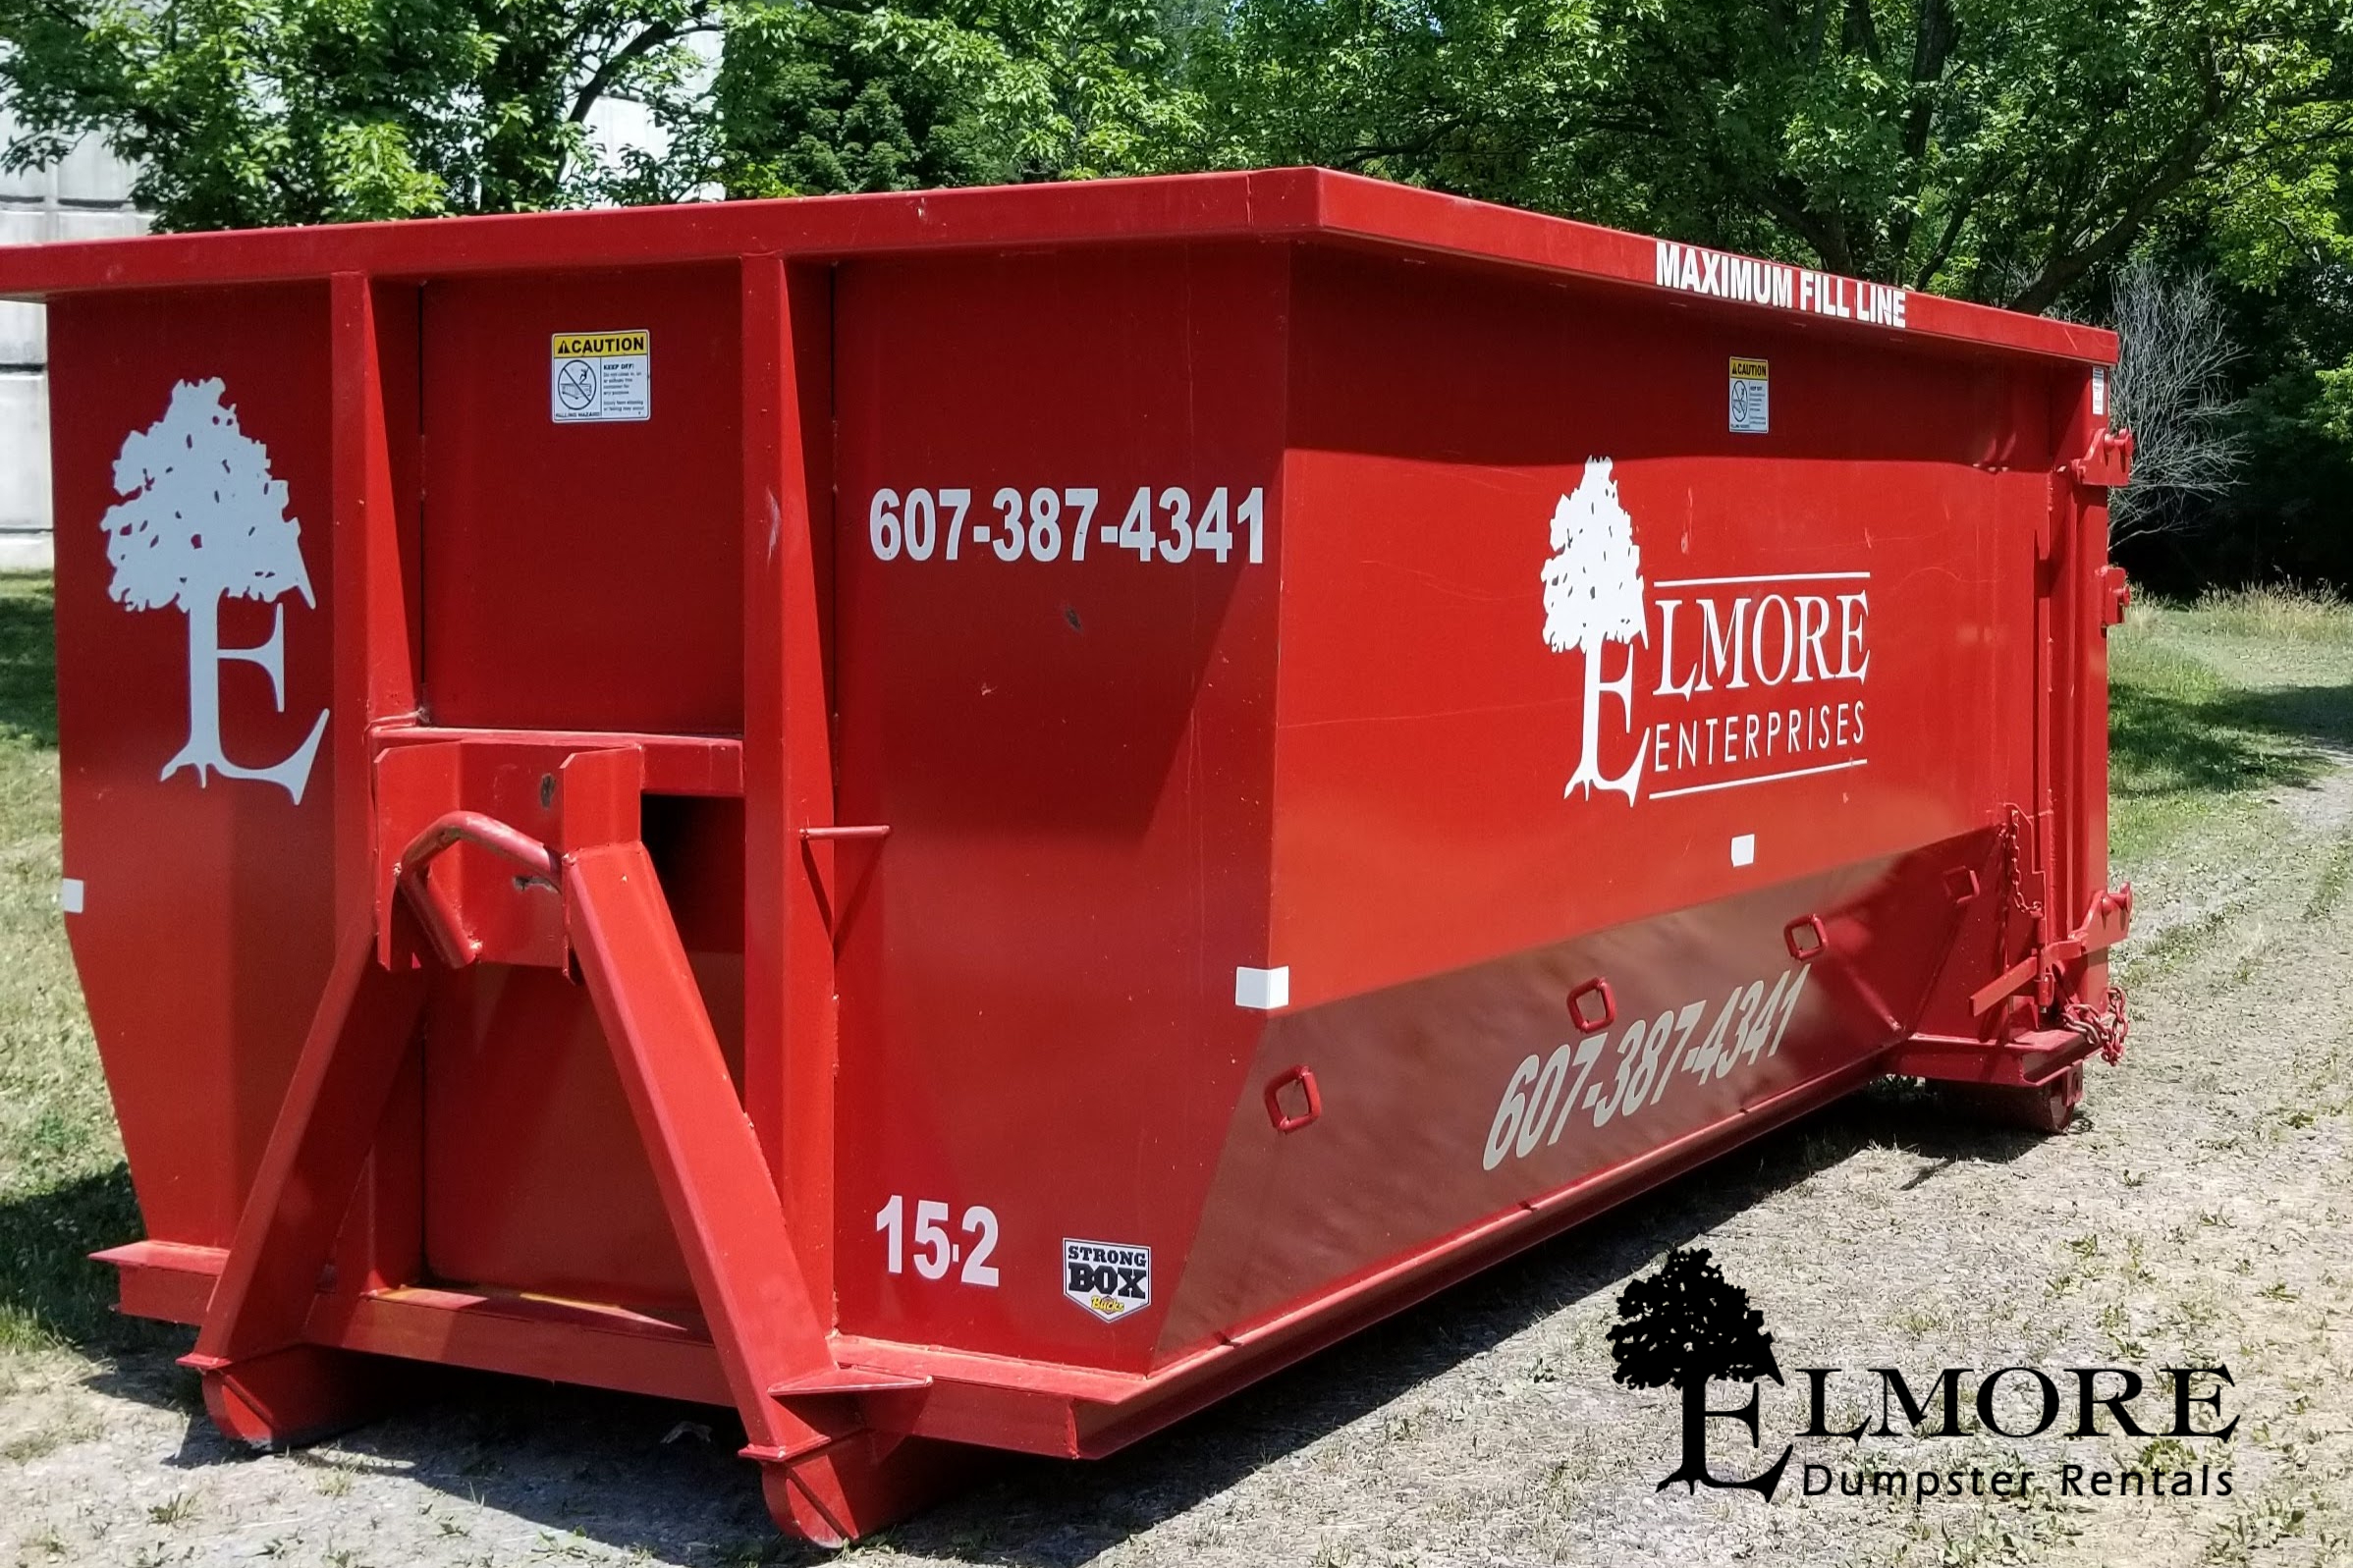 Commercial Dumpster Rental Elmore Dumpster Rentals Lansing NY